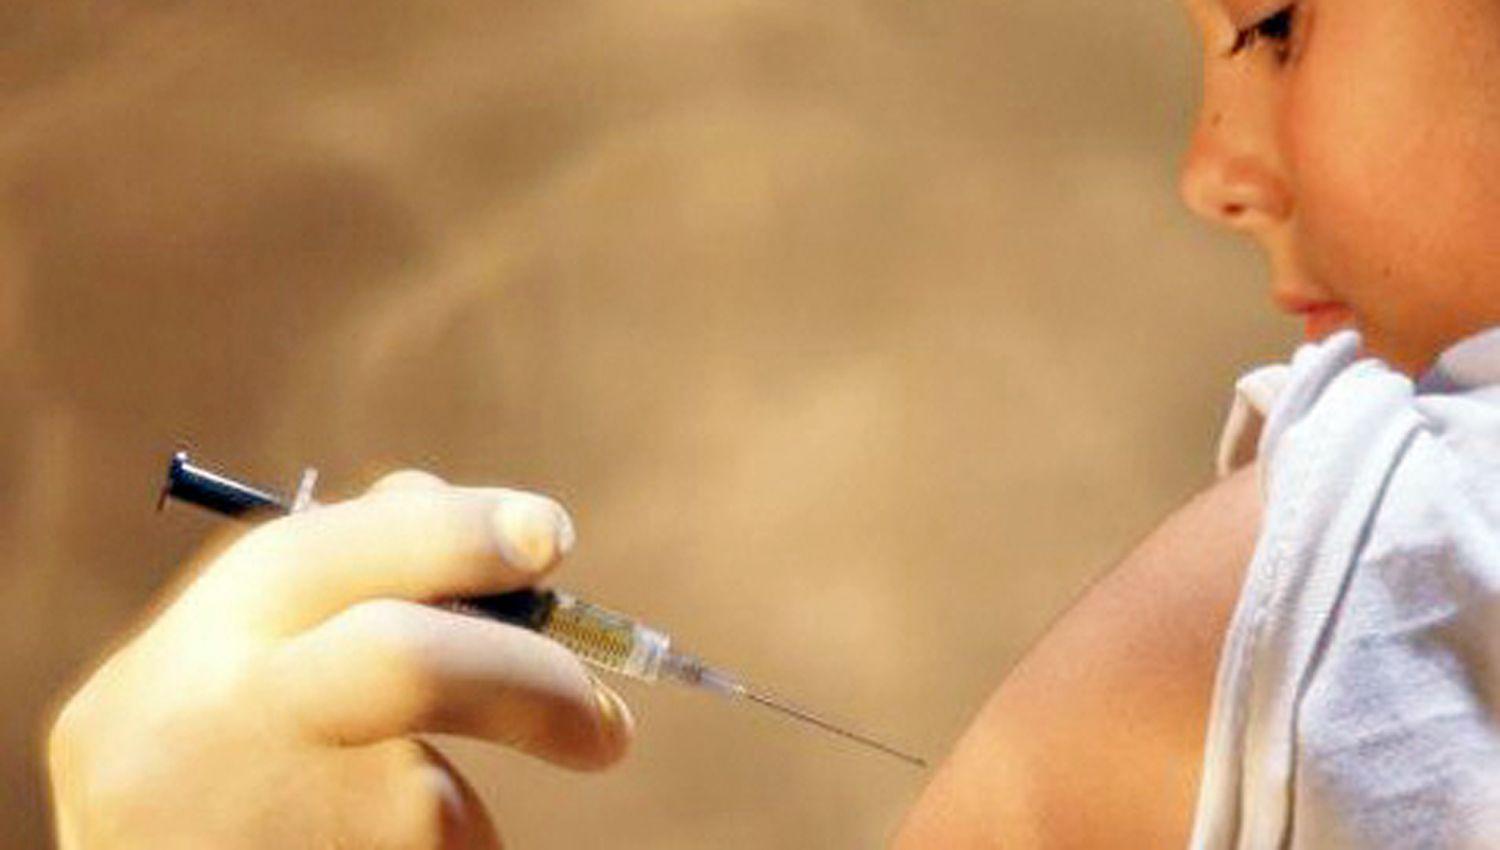 Informan que para la vacunación se debe solicitar turnos
previos sin excepción